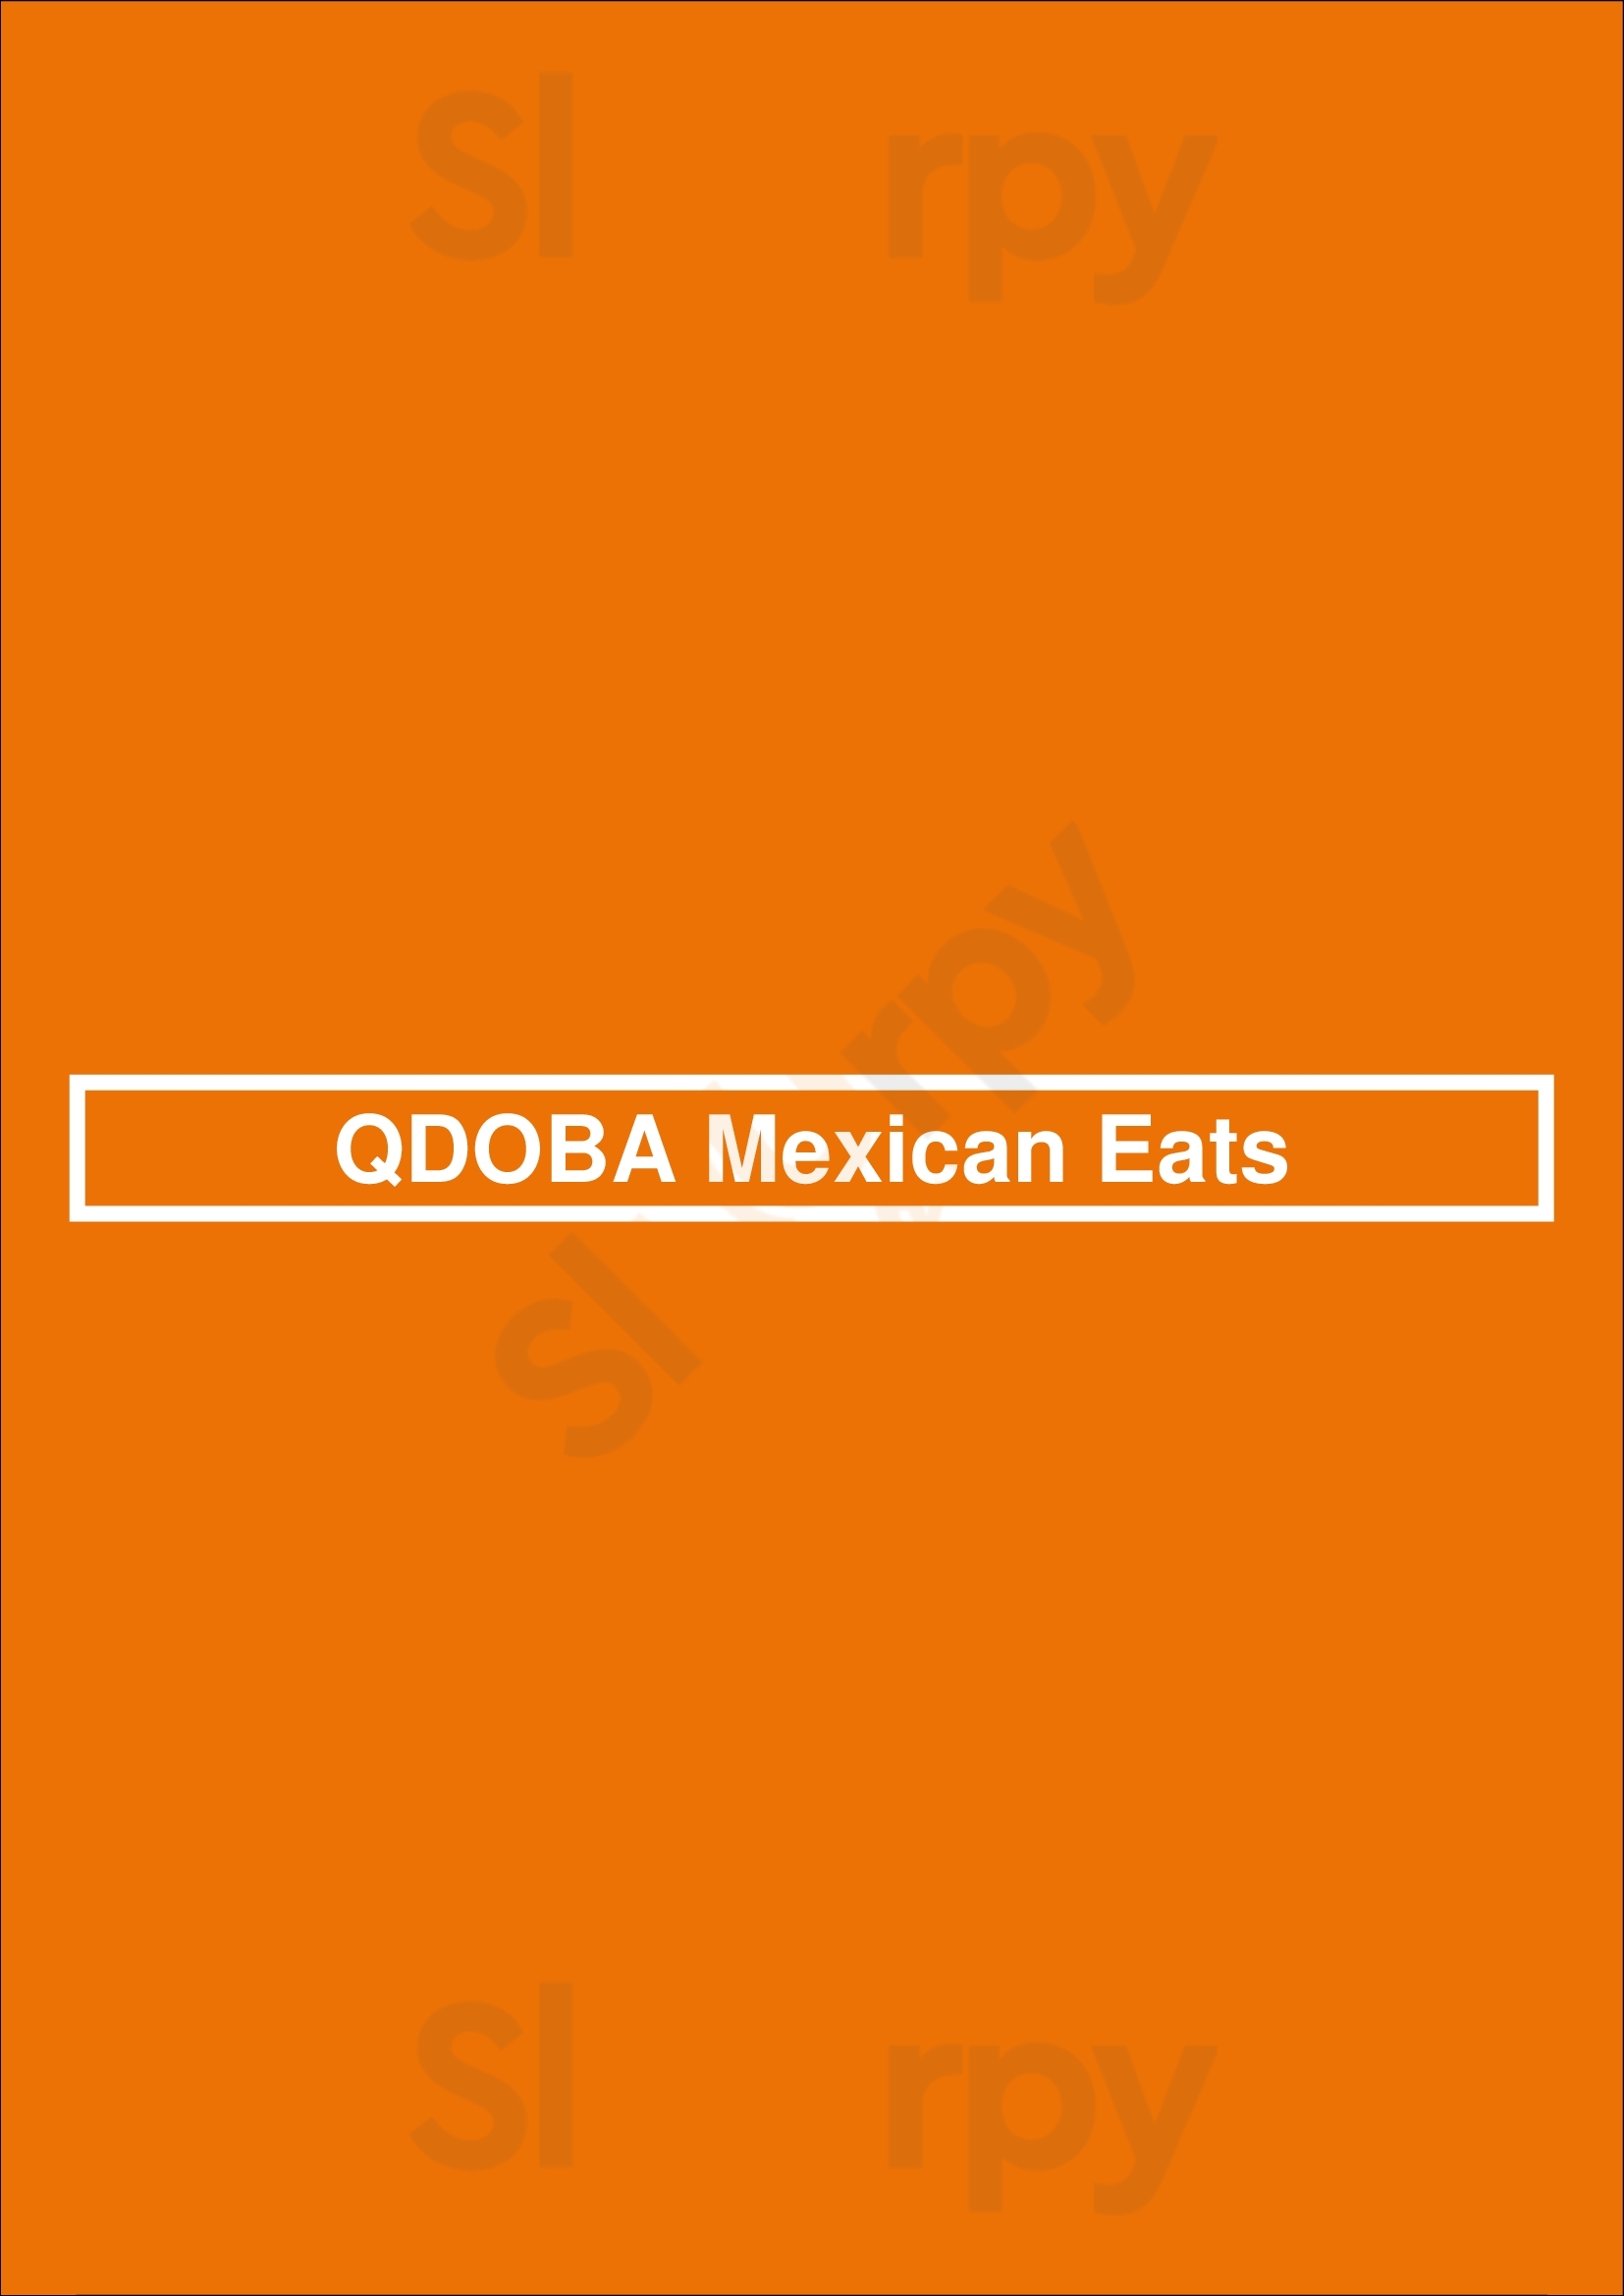 Qdoba Mexican Eats London Menu - 1